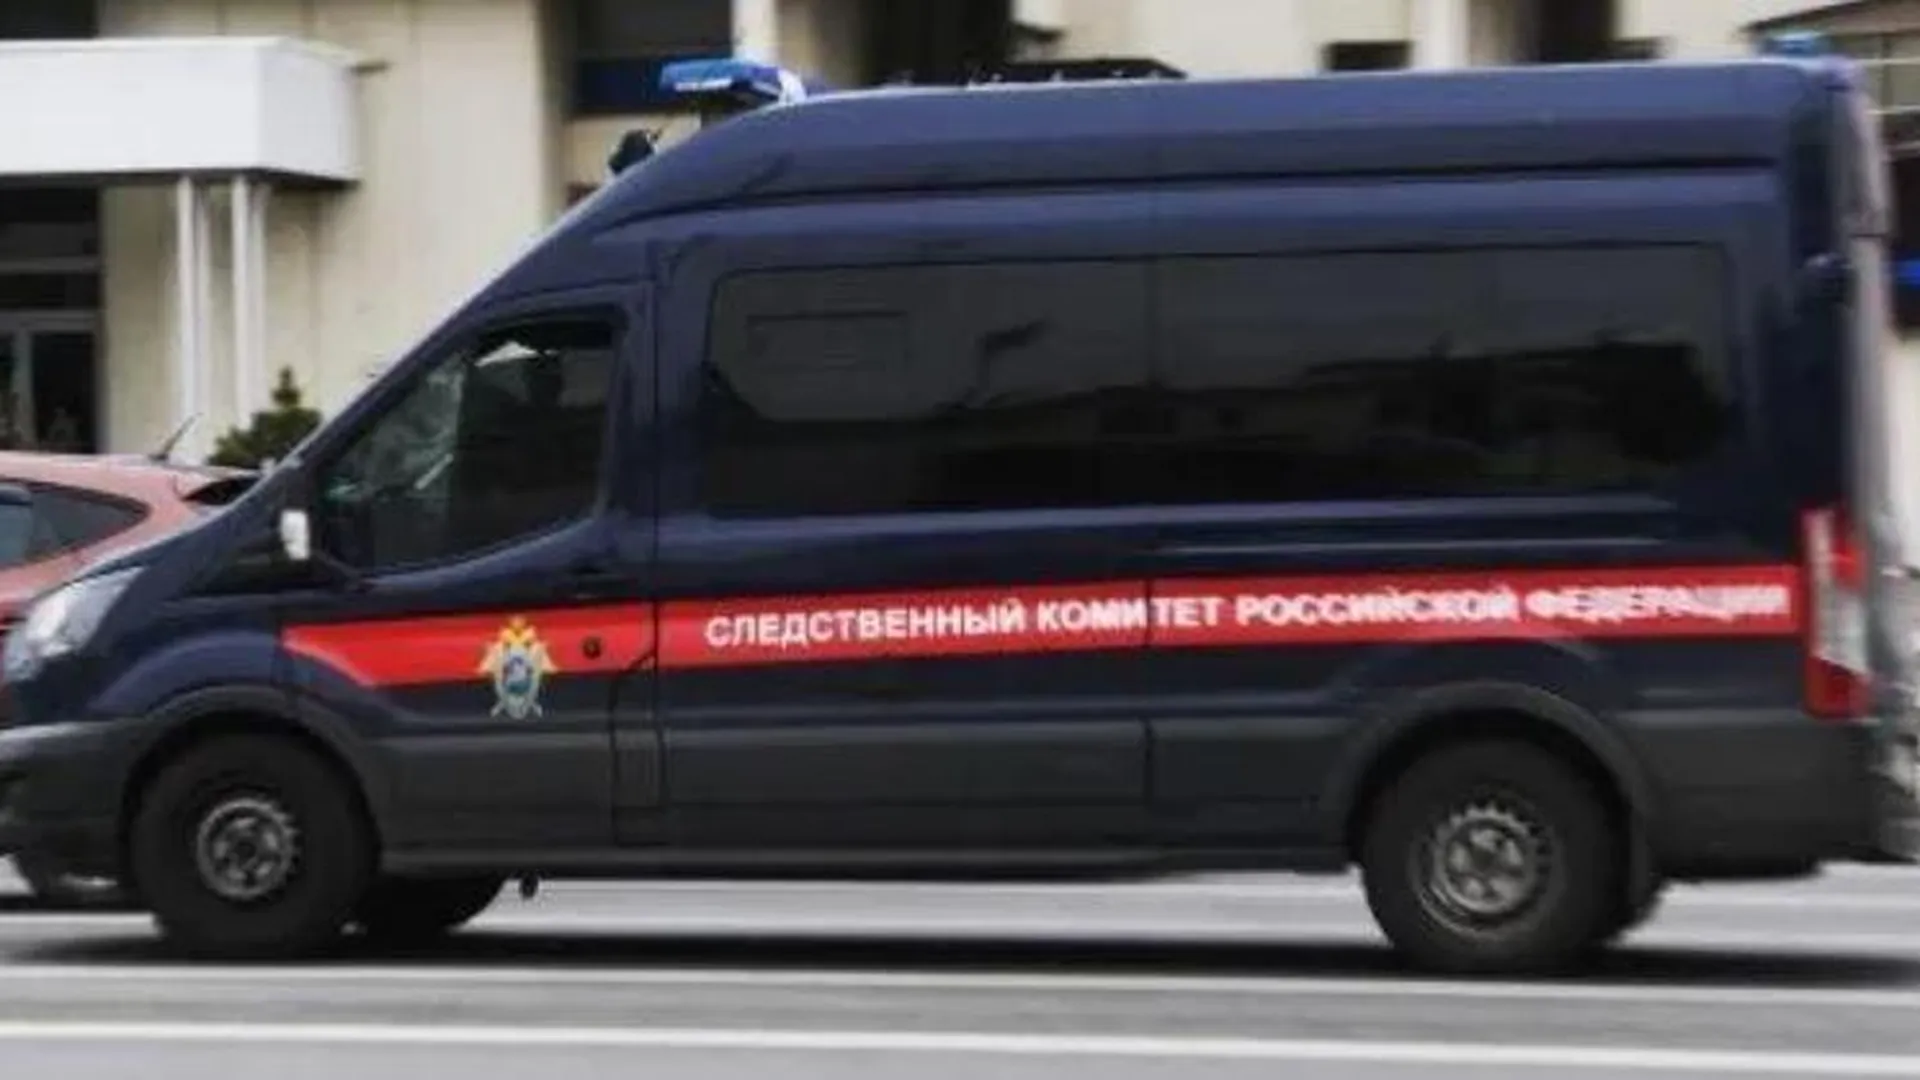 Организатора сгоревшего приюта в Кемерове задержали